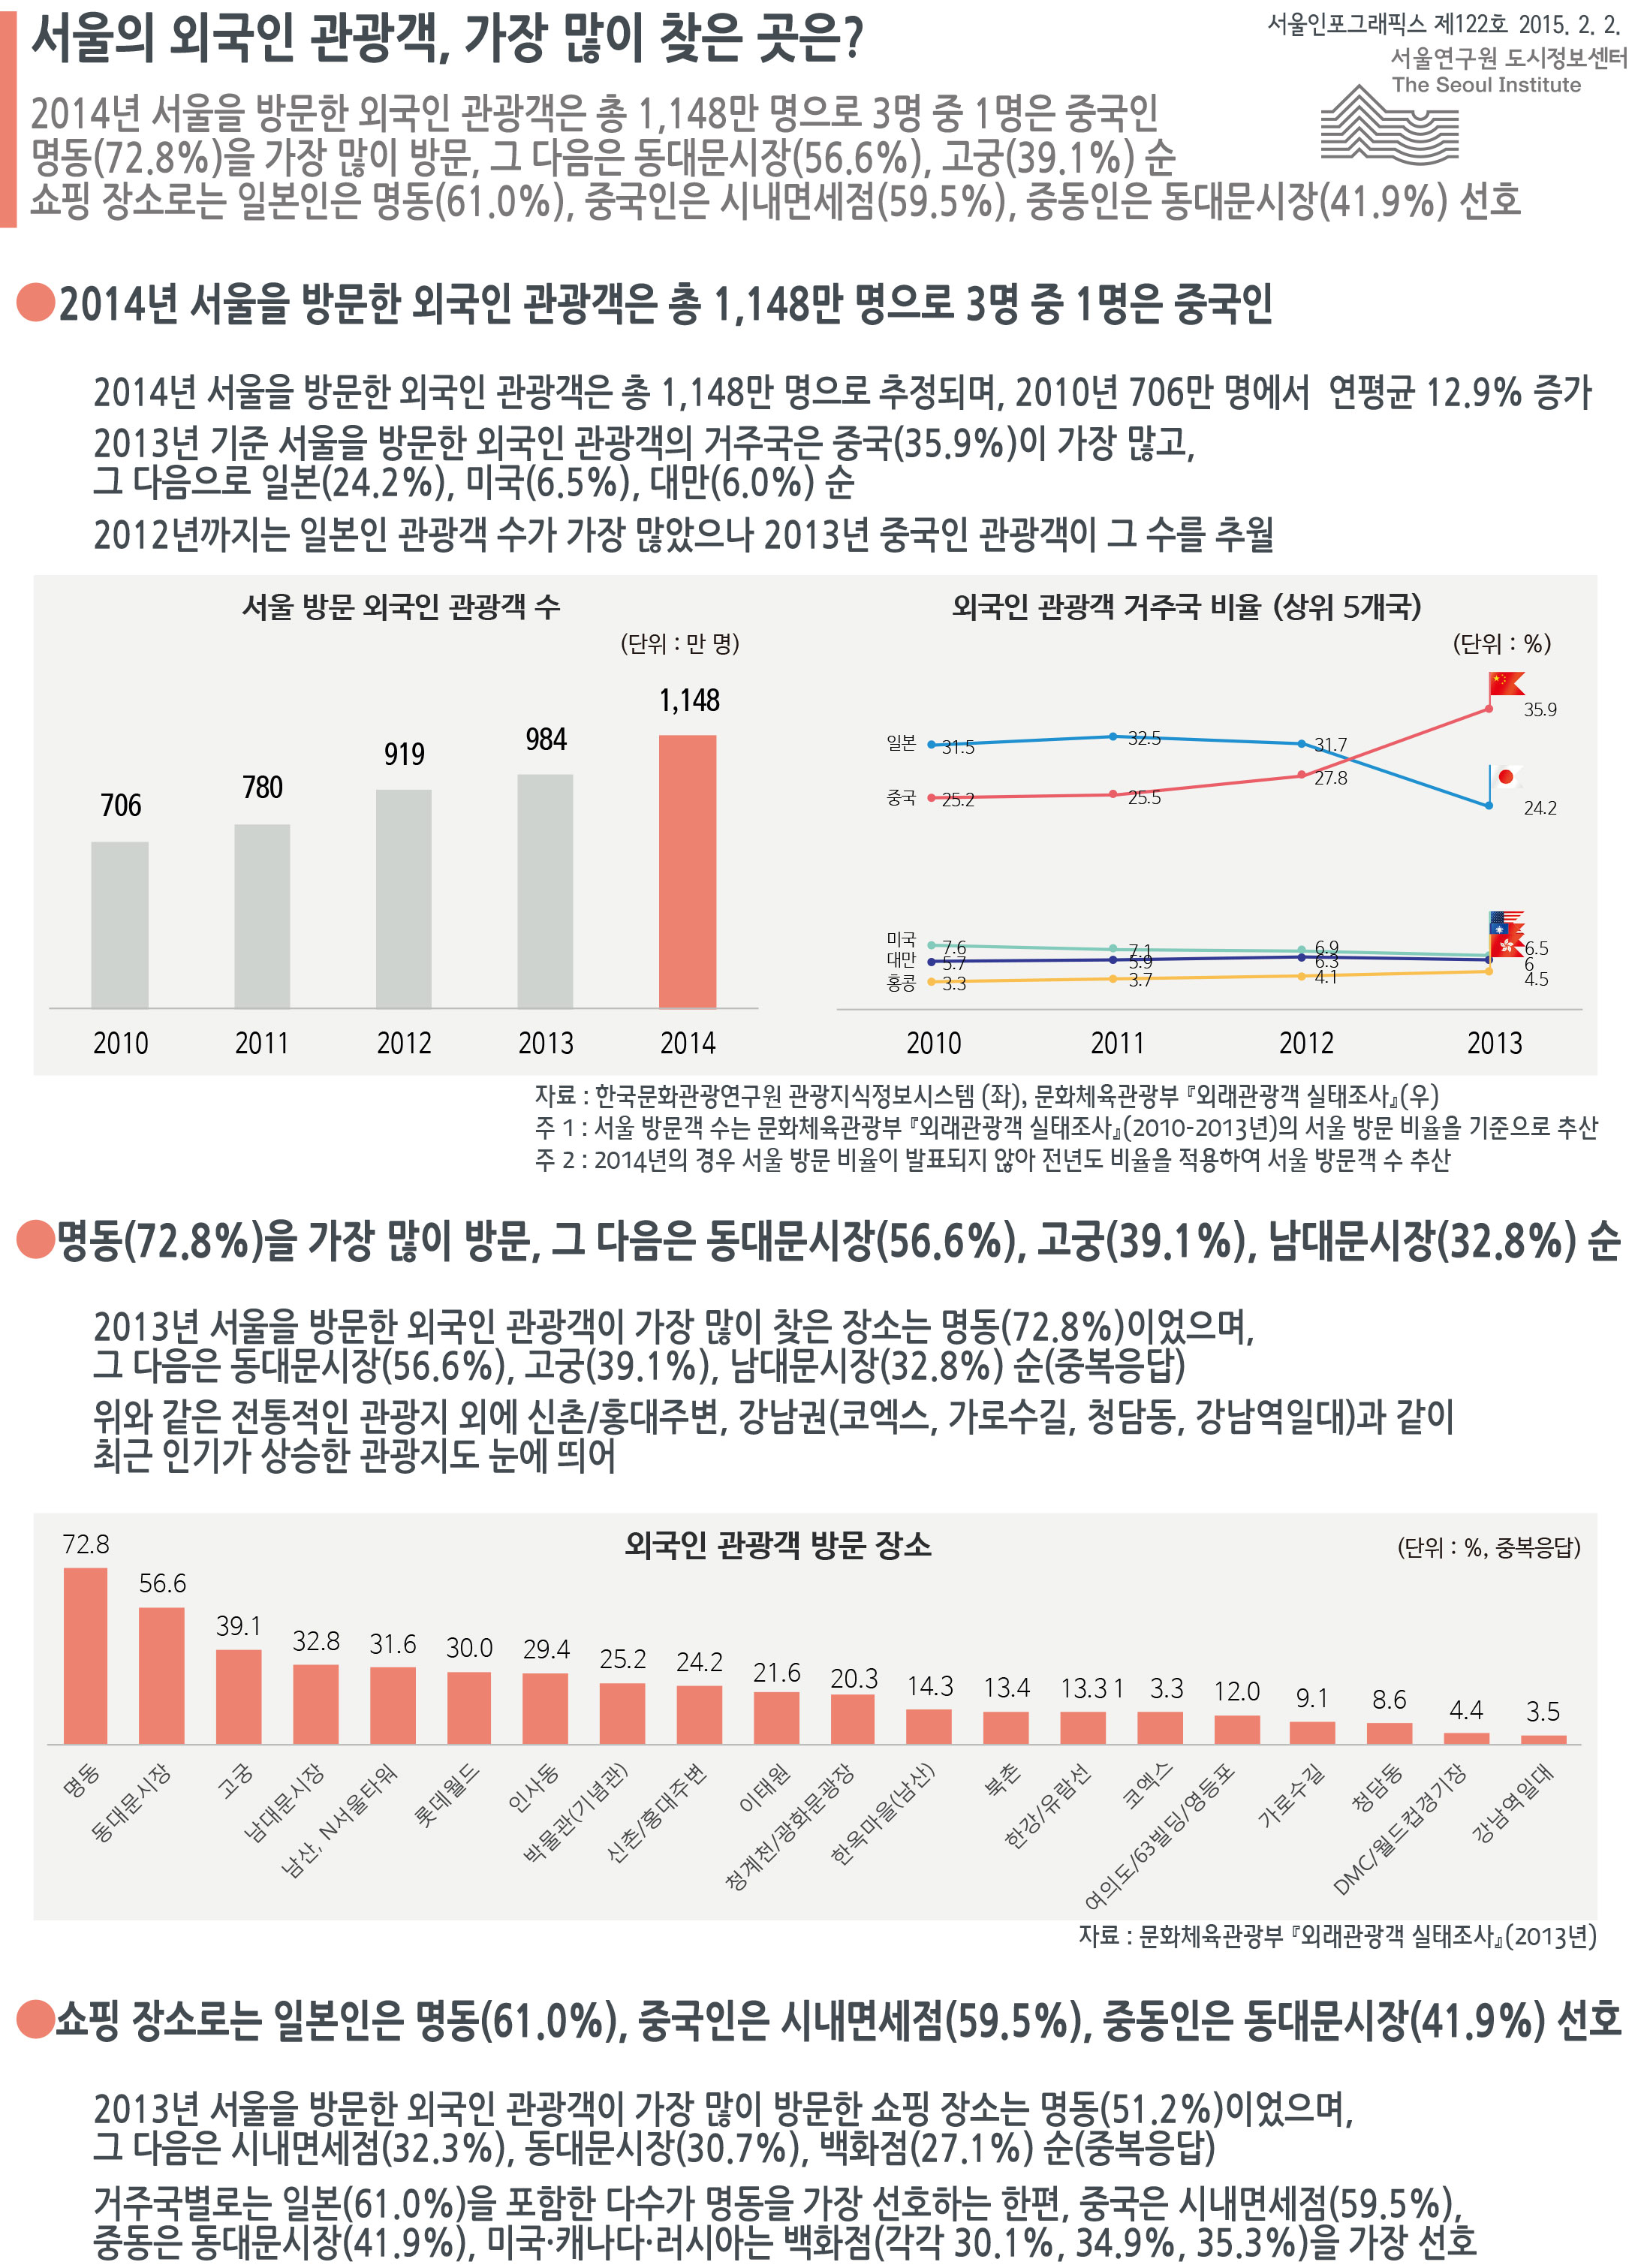 서울의 외국인 관광객, 가장 많이 찾은 곳은? 서울인포그래픽스 제122호 2015년 2월 2일 2014년 서울을 방문한 외국인 관광객은 총 1,148만 명으로 3명 중 1명은 중국인 명동(72.8%)을 가장 많이 방문하며, 그 다음은 동대문시장(56.6%), 고궁(39.1%), 남대문시장(32.8%) 순 쇼핑 장소로는 일본인은 명동(61.0%), 중국인은 시내면세점(59.5%), 중동인은 동대문시장(41.9%) 선호함으로 정리 될 수 있습니다. 인포그래픽으로 제공되는 그래픽은 하단에 표로 자세히 제공됩니다.